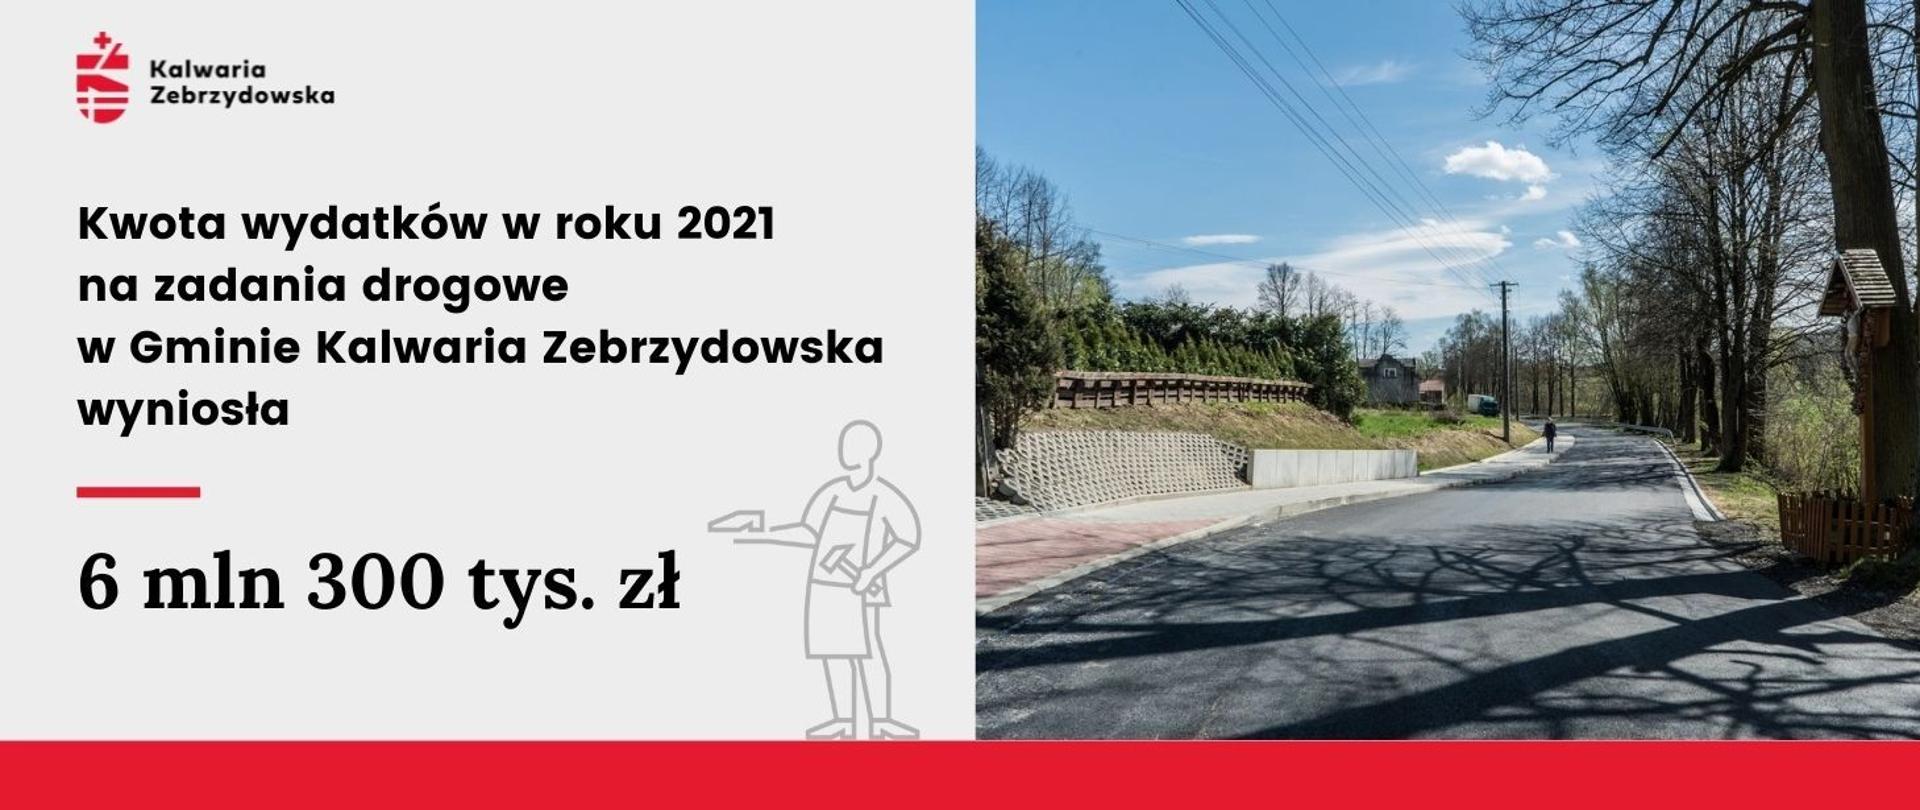 Ilustracja - Kwota wydatków w roku 2021 na zadania drogowe w Gminie Kalwaria Zebrzydowska wyniosła 6 mln 300 tys. zł. W prawej części widoczna droga. 